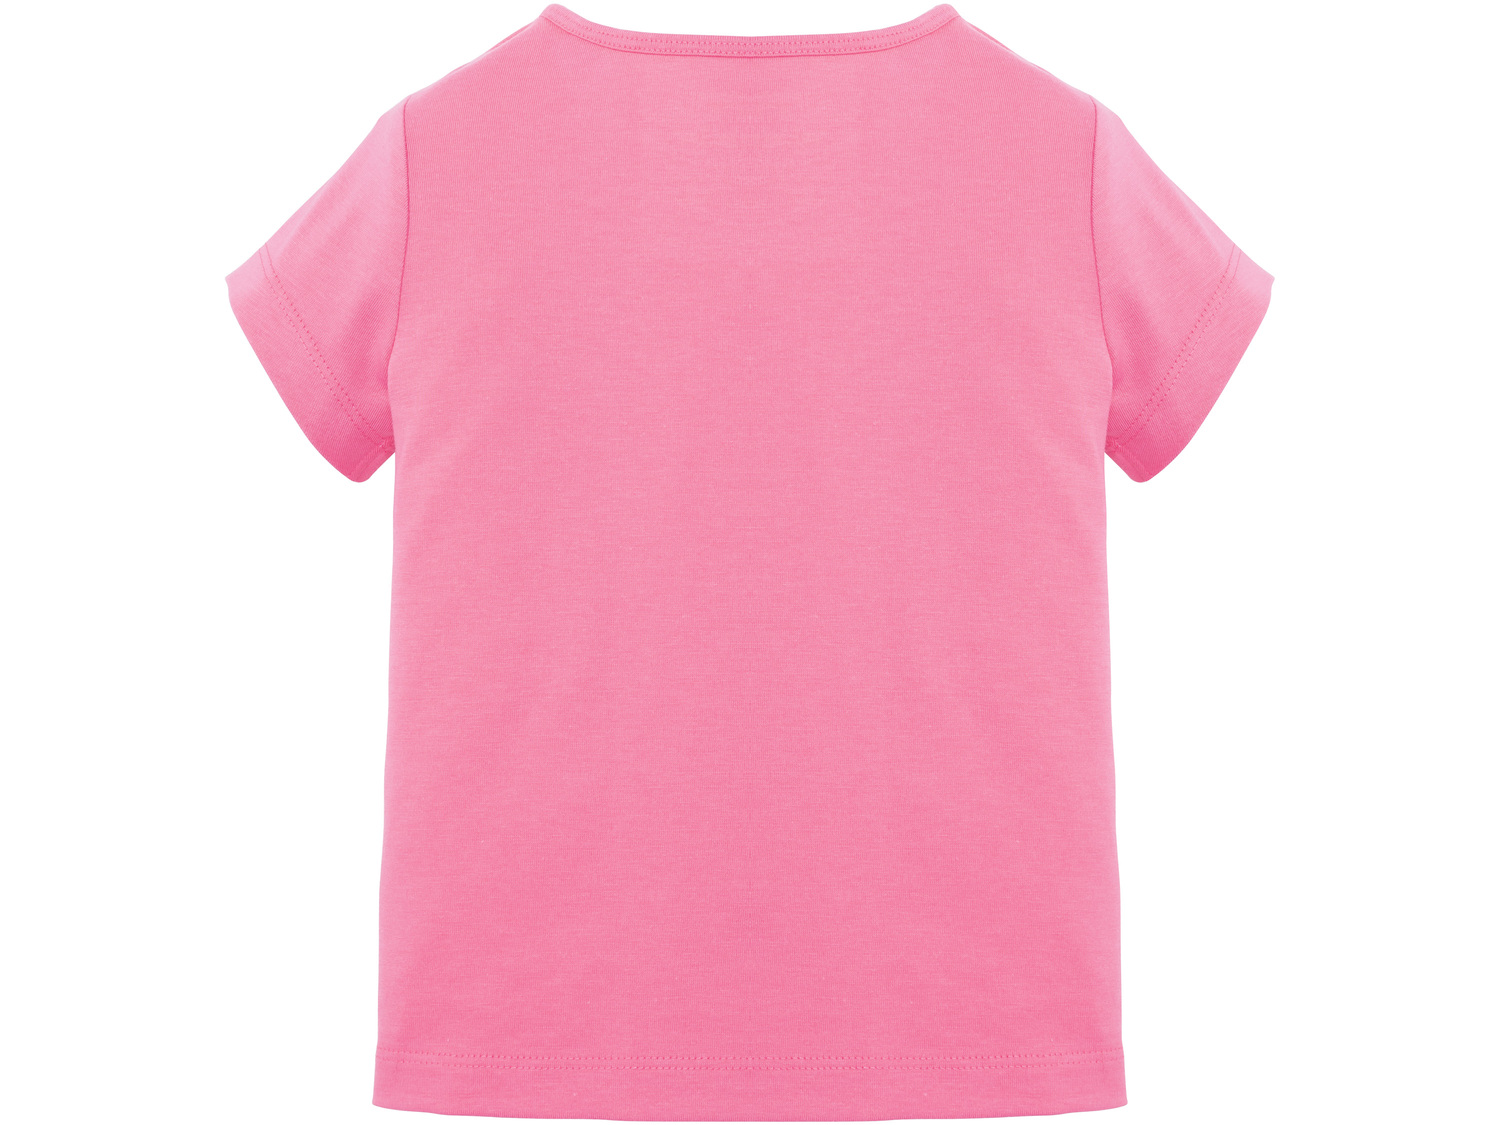 T-shirt dziewczęcy Lupilu, cena 7,99 PLN 
- 100% bawełny
- rozmiary: 86-116
Dostępne ...